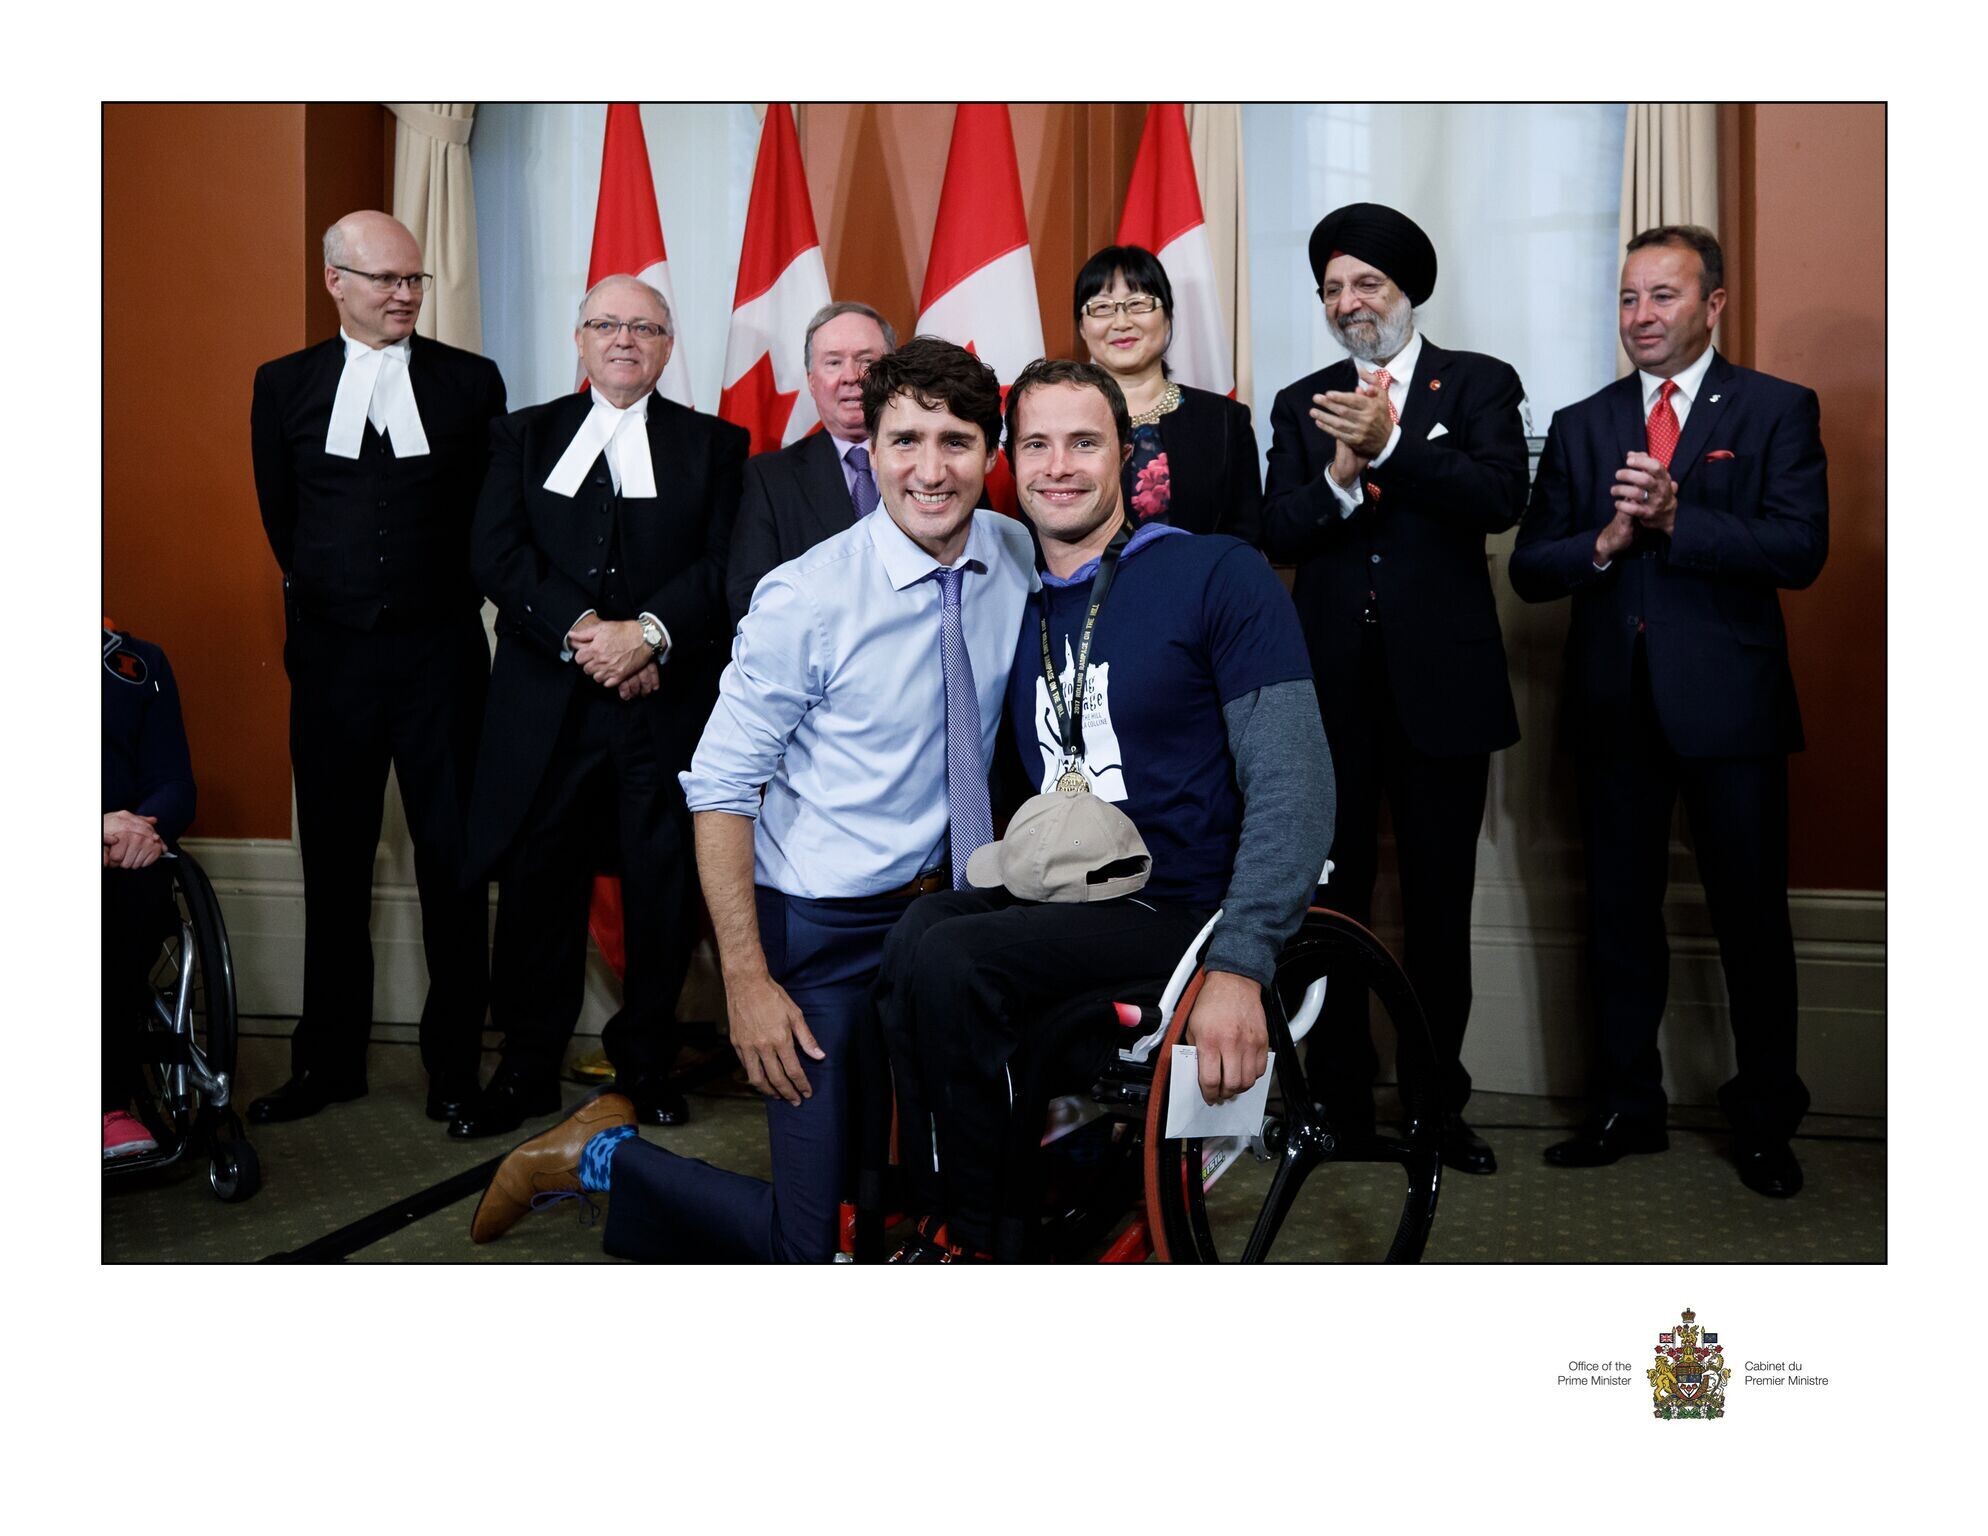 Der kanadische Premierminister Justin Trudeau kniet links neben dem Rollstuhlsportler Marcel Hug für das Foto. Im Hintergrund stehen sechs applaudierende Staatsangestellte.